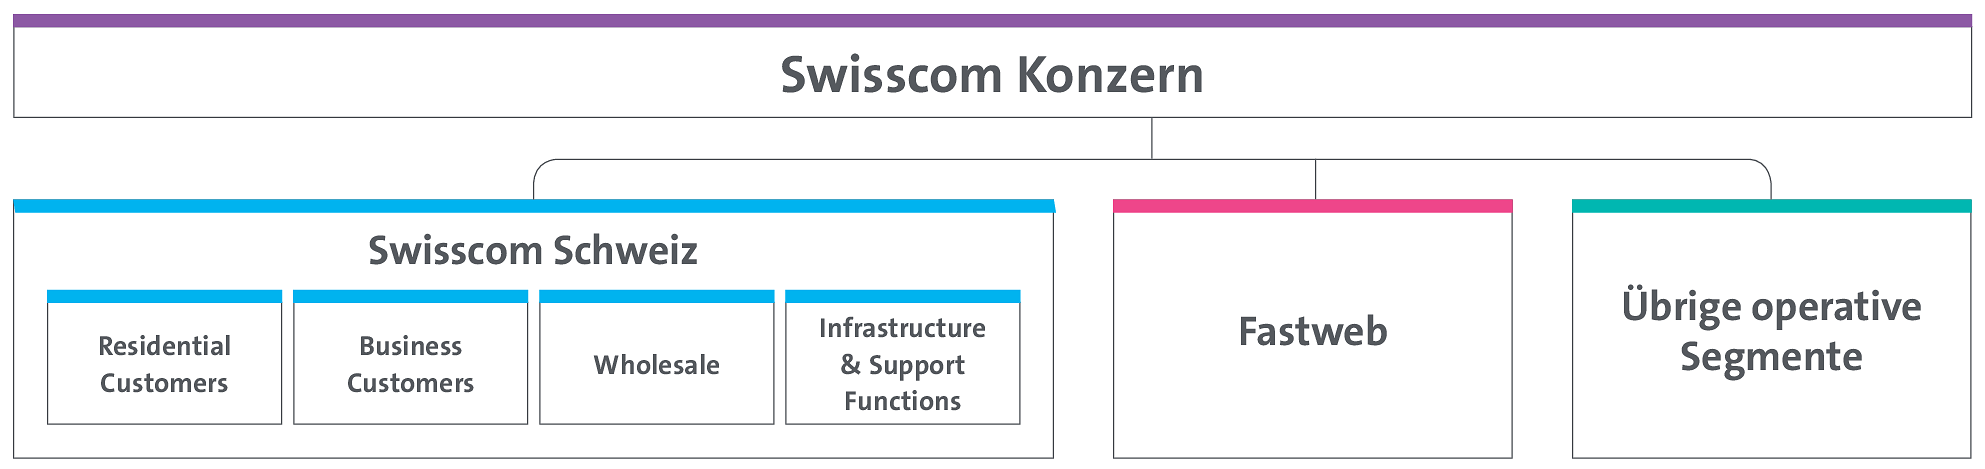 Die Grafik stellt das Organigramm des Swisscom Konzerns dar.